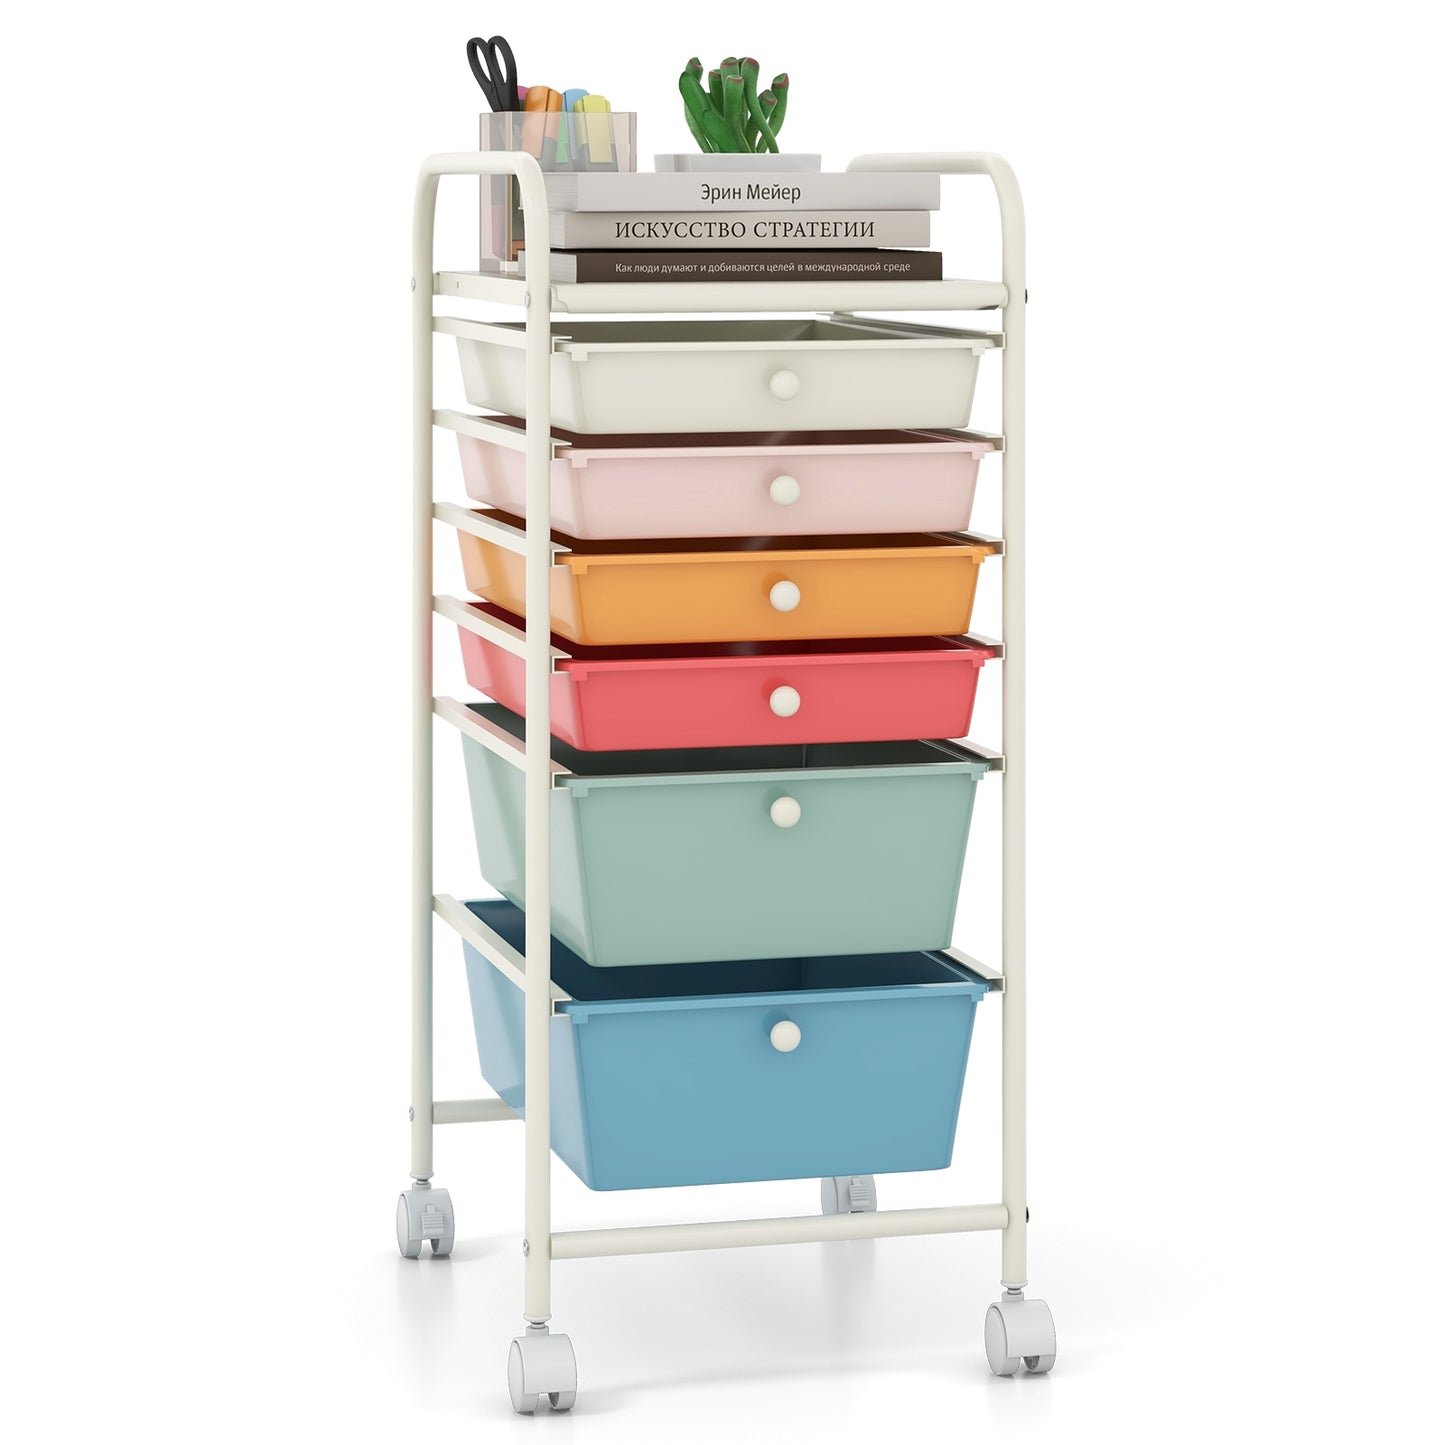 6 Drawers Rolling Storage Cart Organizer-Macaron